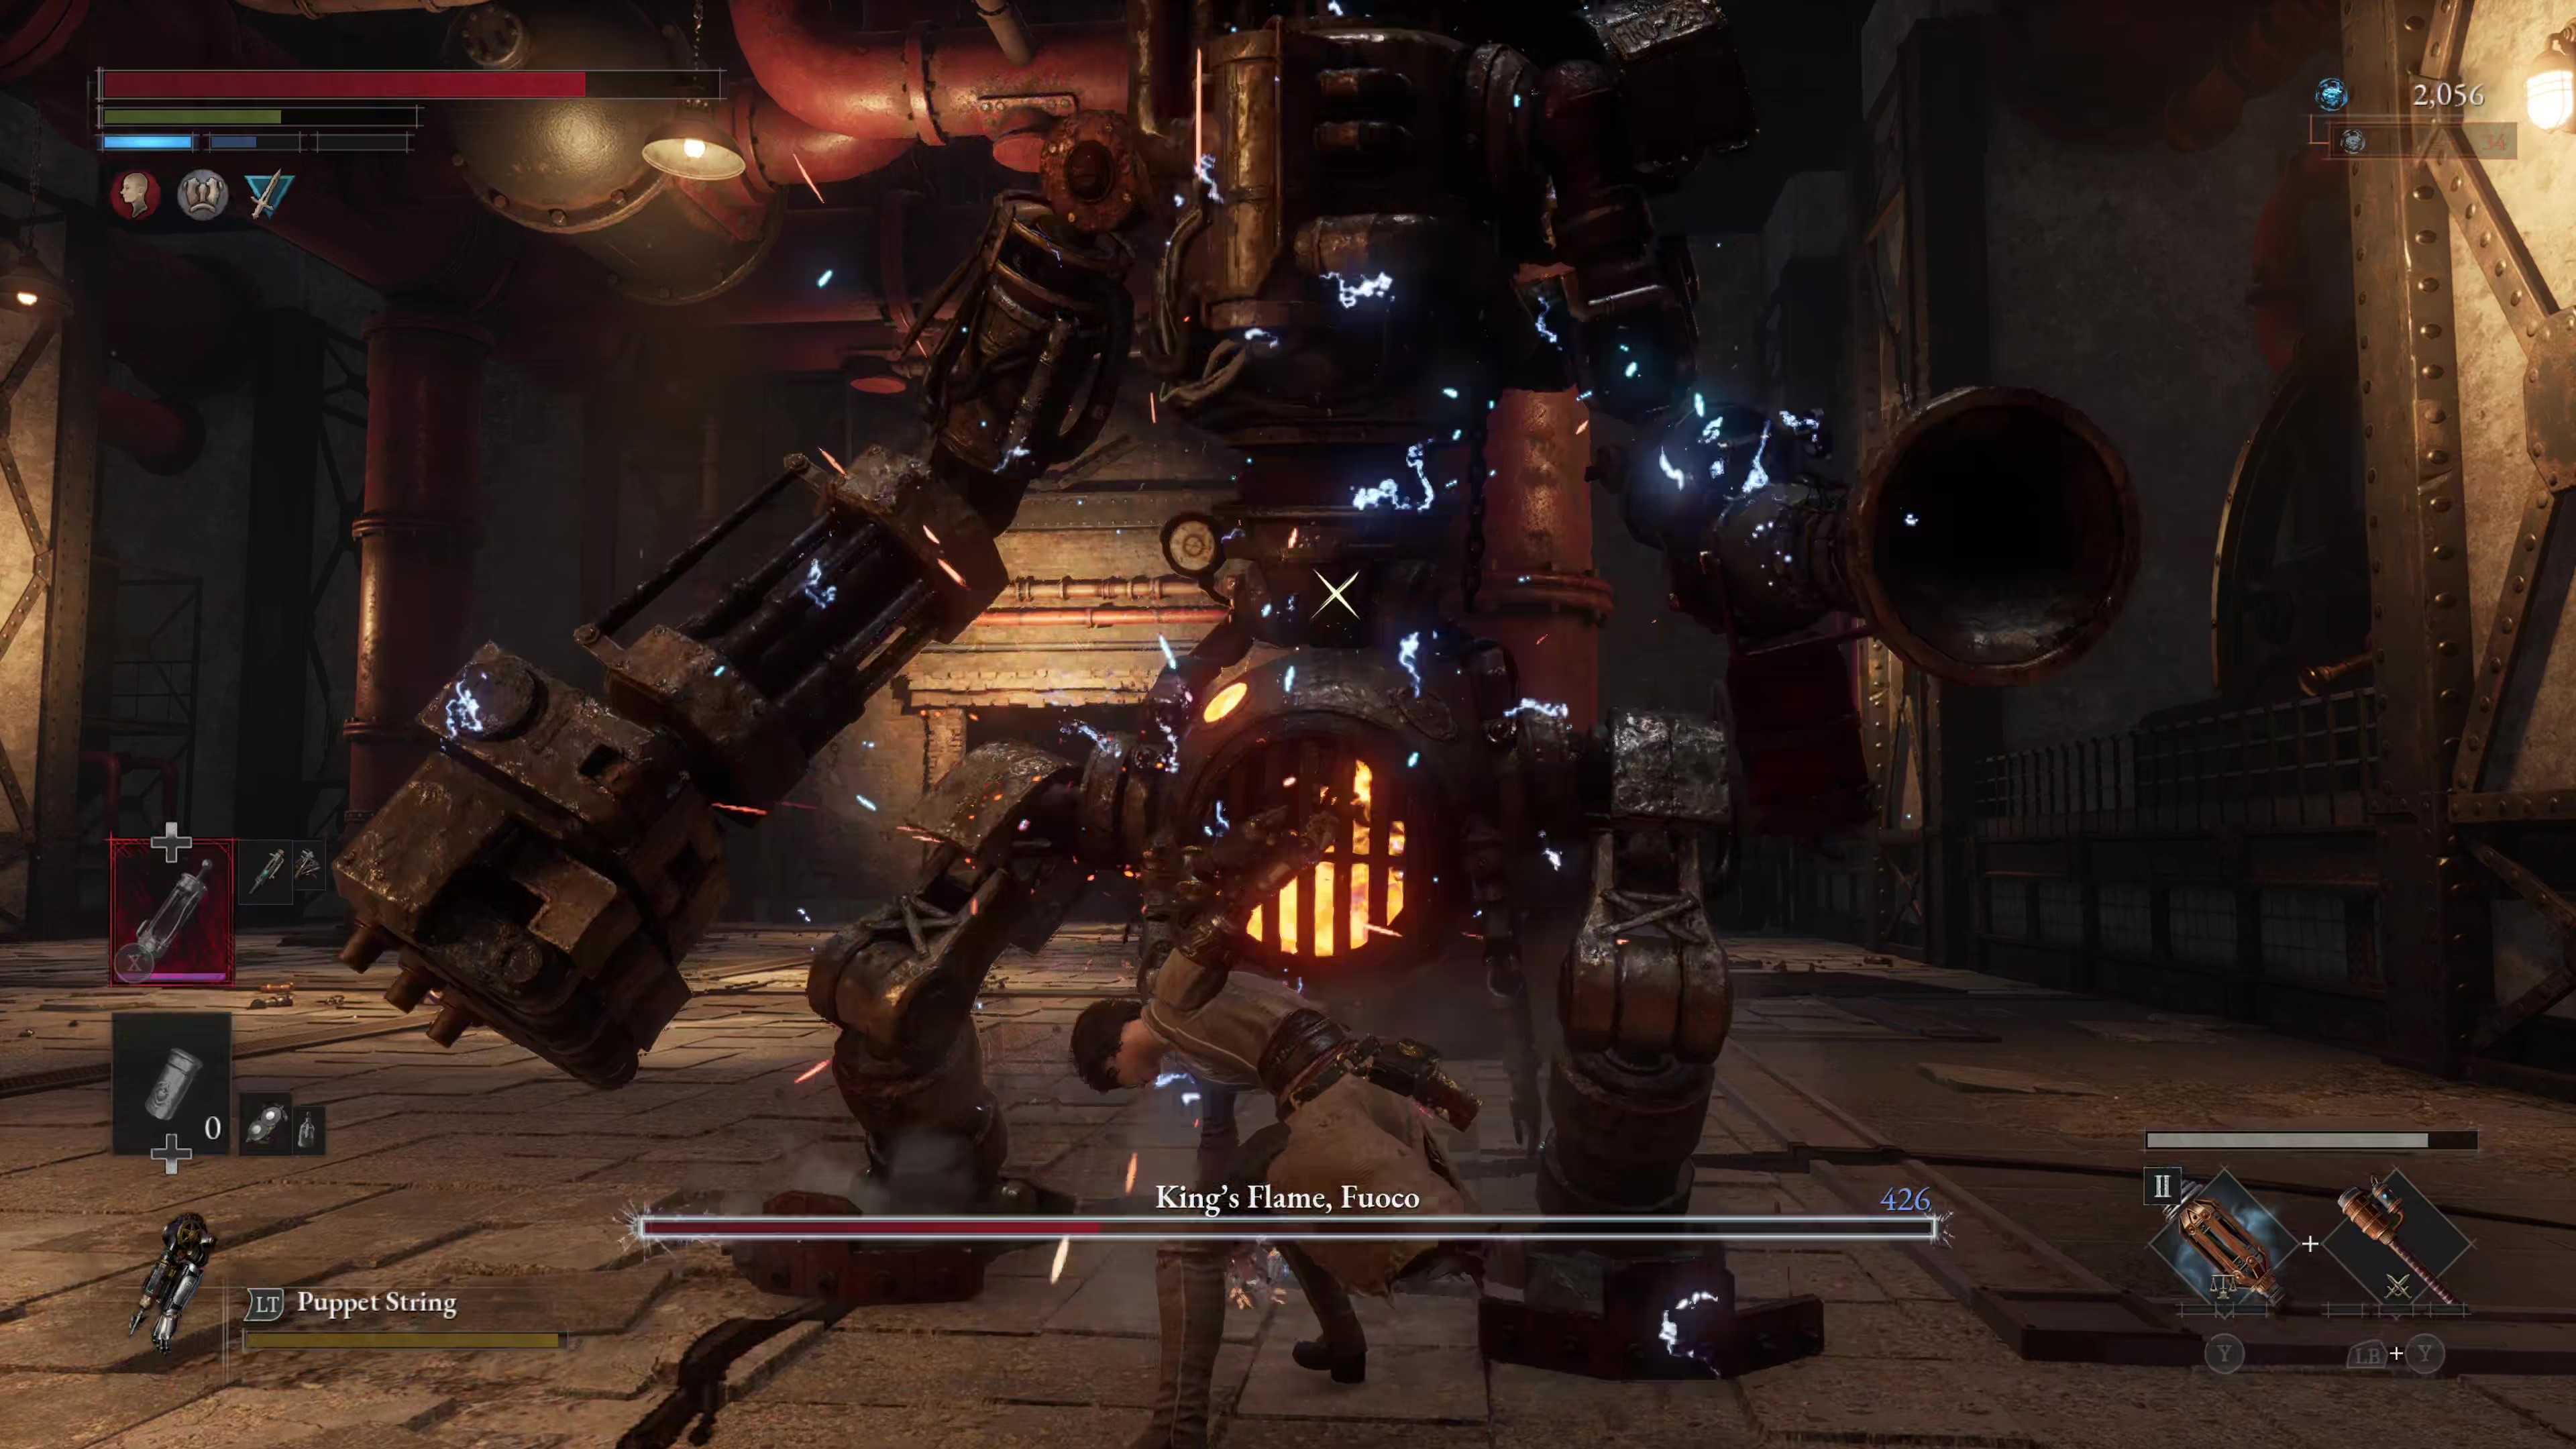 Captura de pantalla del juego de Lies of P's King's Flame, pelea contra el jefe Fuoco.